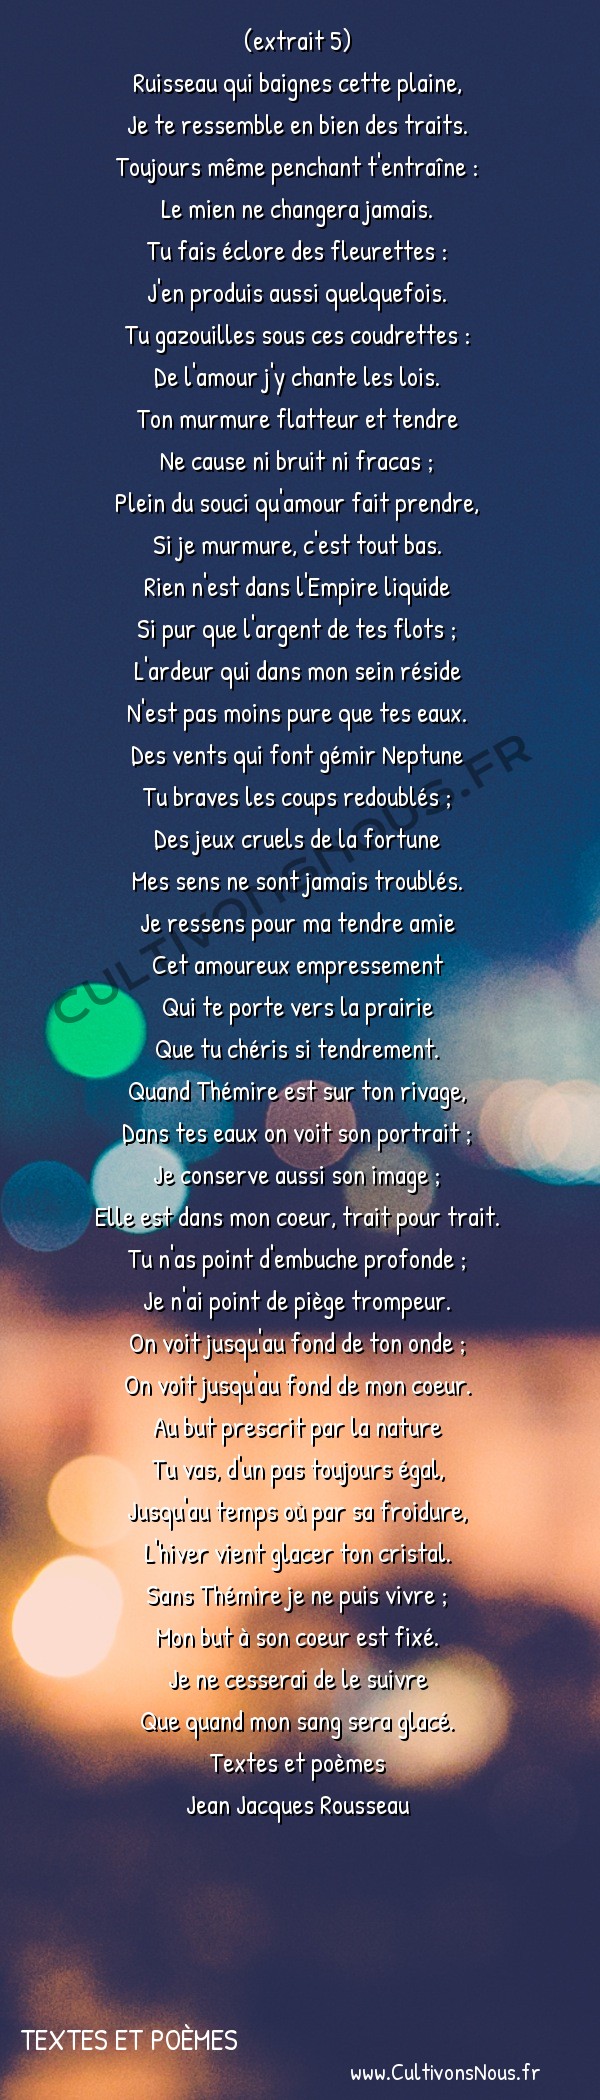  Poésie Jean Jacques Rousseau - textes et poèmes - Les consolations des misères de ma vie -  (extrait 5) Ruisseau qui baignes cette plaine,